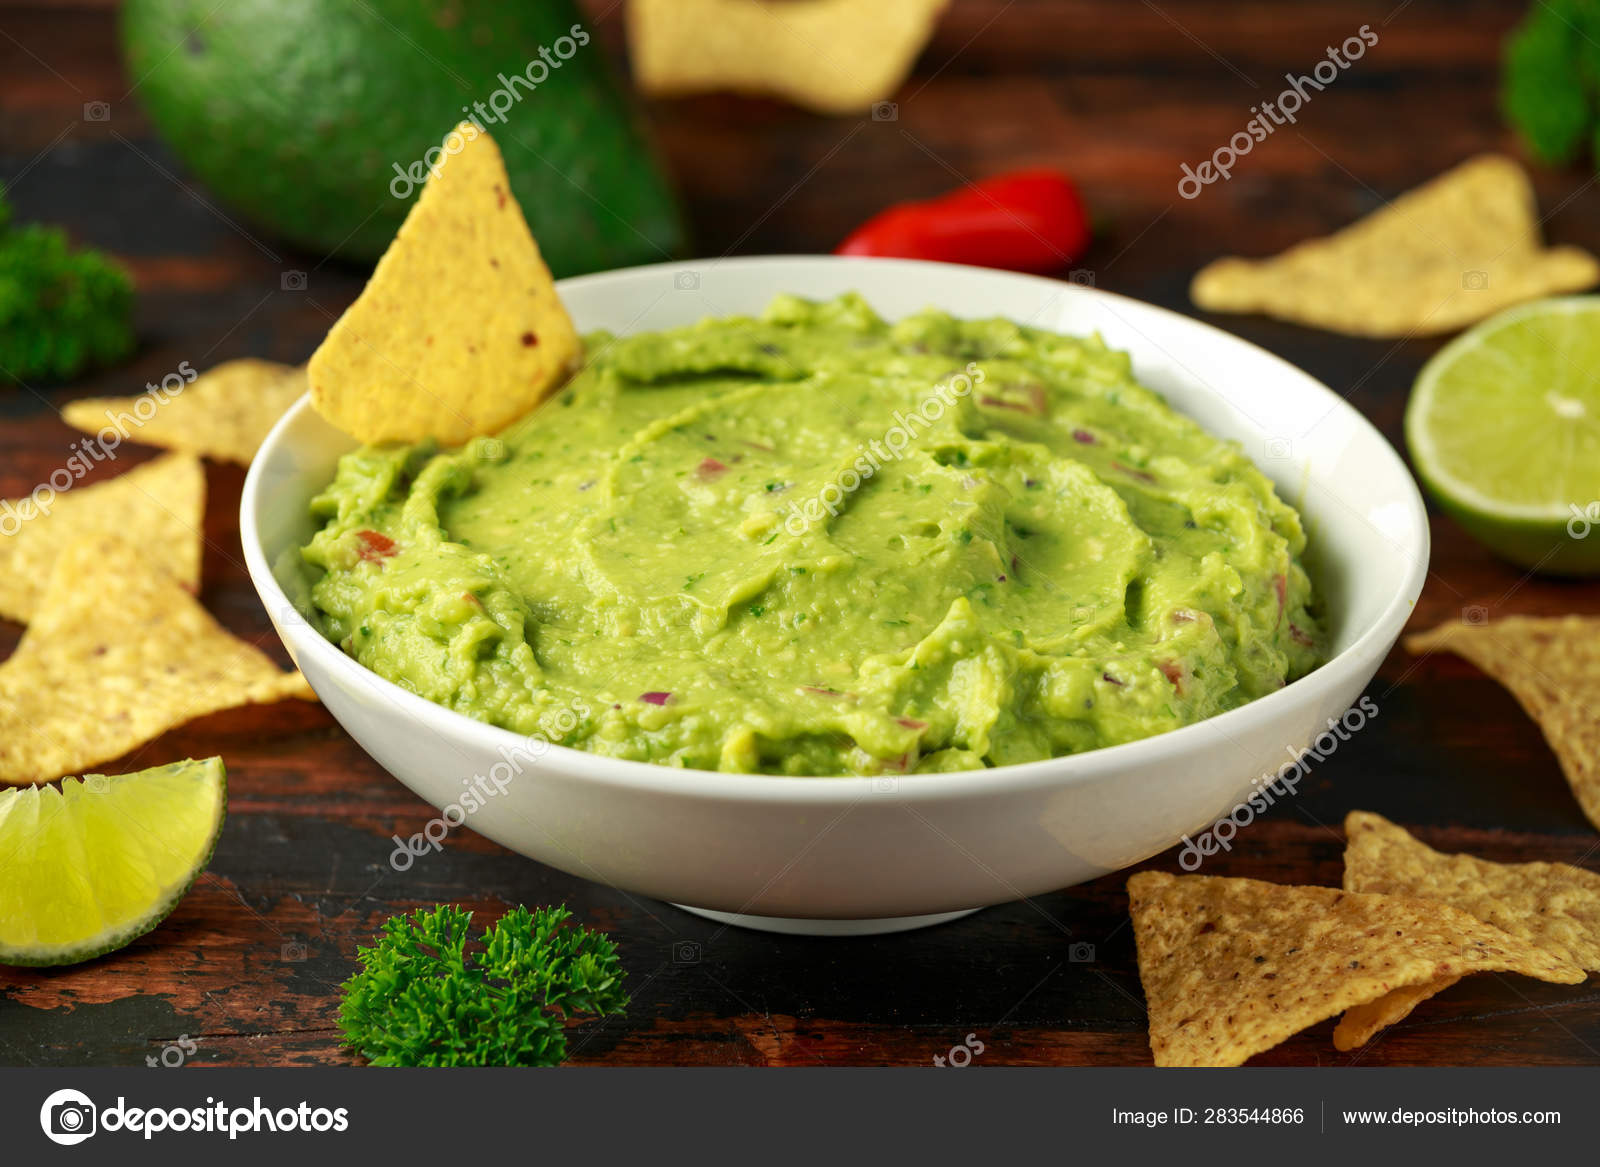 Kom met verse guacamole met nacho's chips kruiden. Gezond veganistisch, groenten eten. ⬇ Stockfoto, rechtenvrije foto door funandrejs@gmail.com